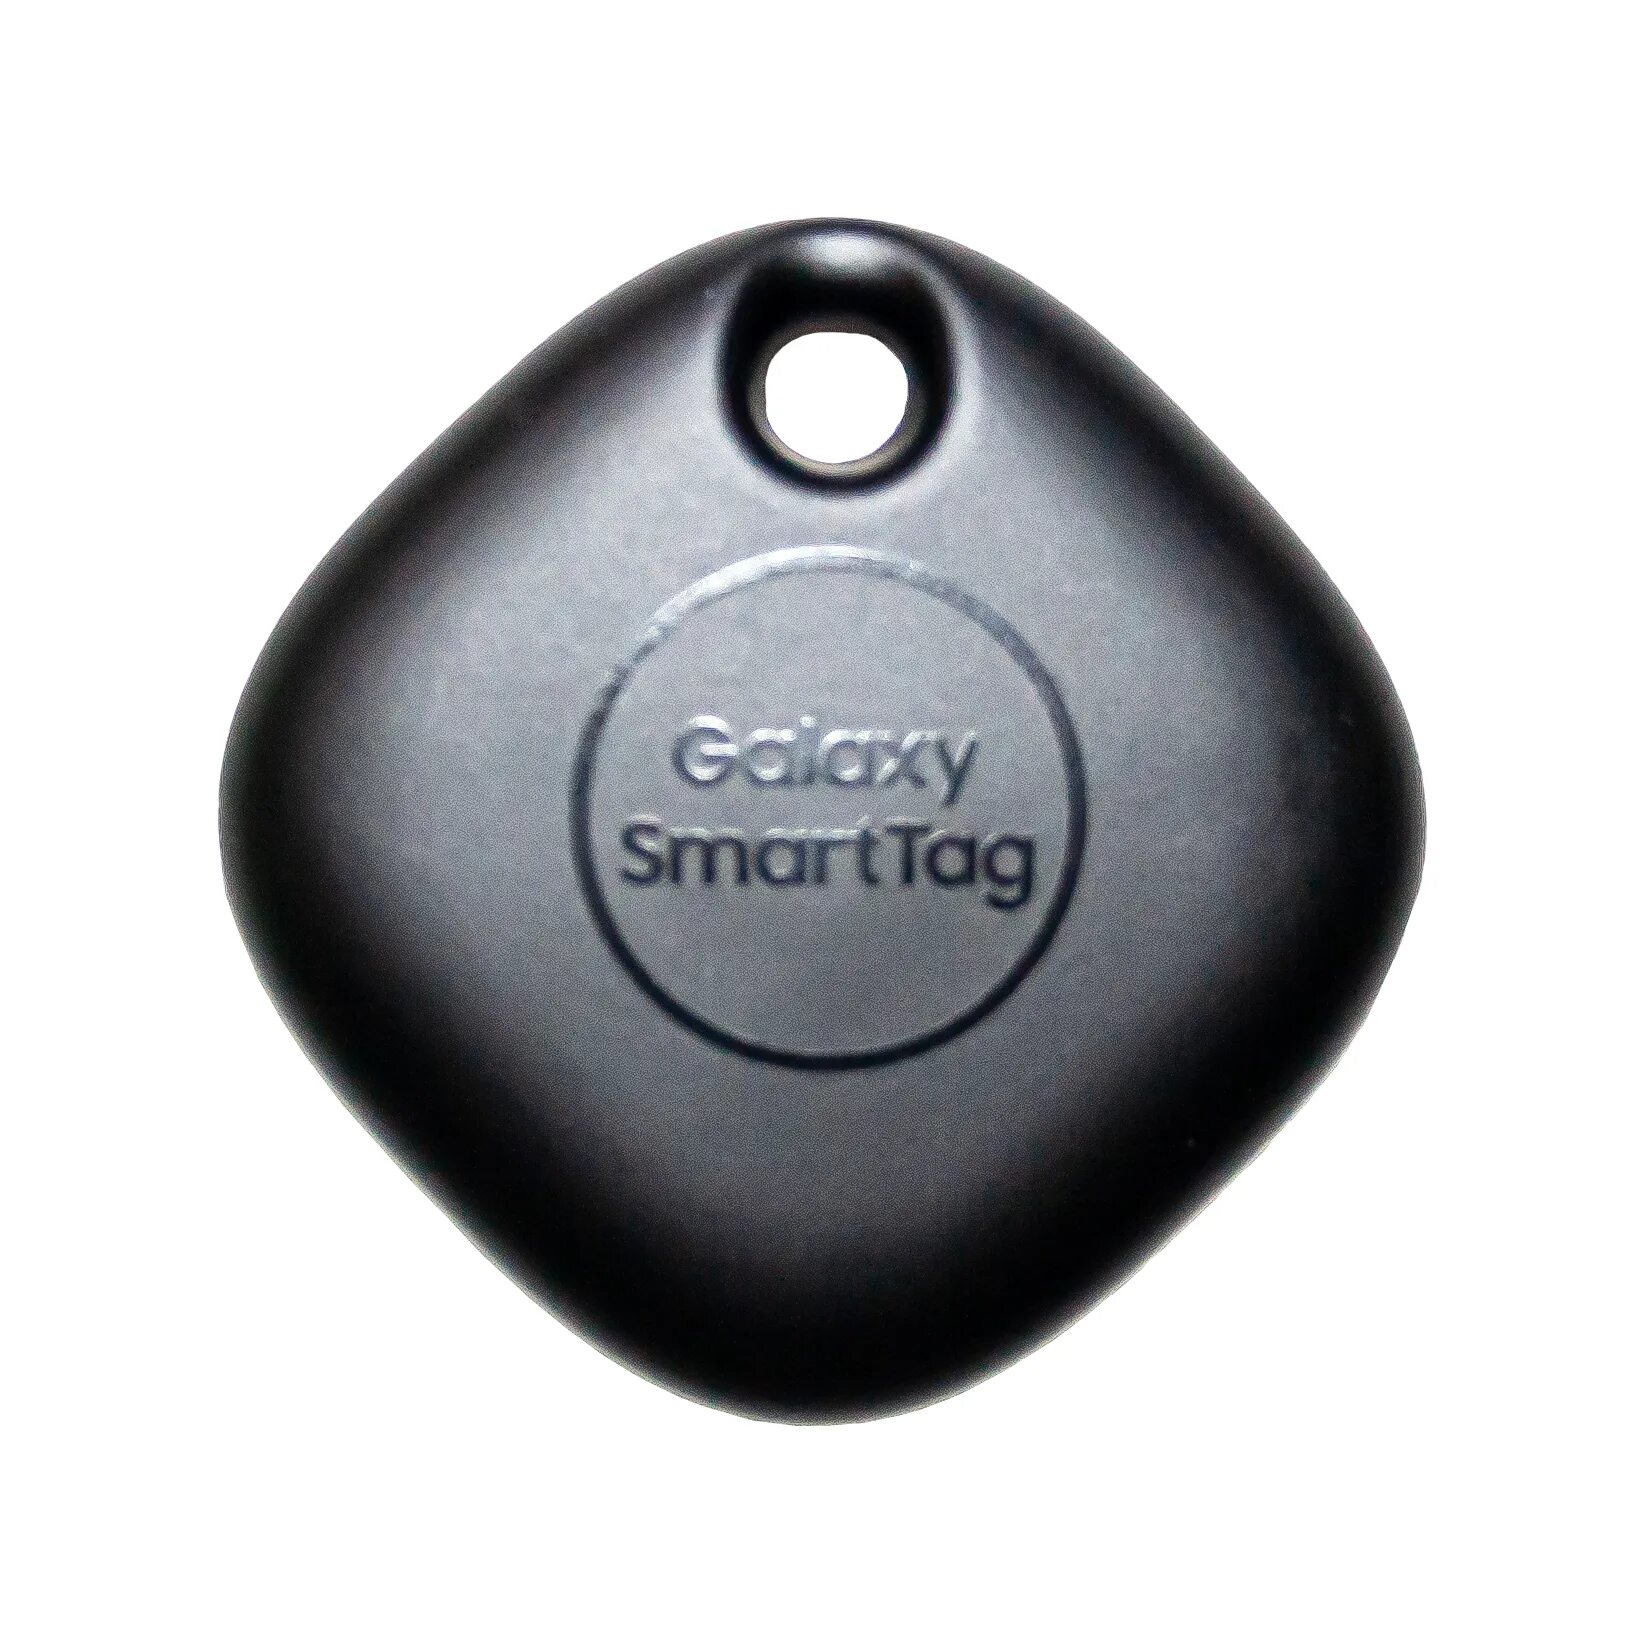 Samsung Galaxy smarttag2. Метка Galaxy SMARTTAG. Samsung Smart tag. Трекер Samsung SMARTTAG для Samsung Galaxy. Смарт тег